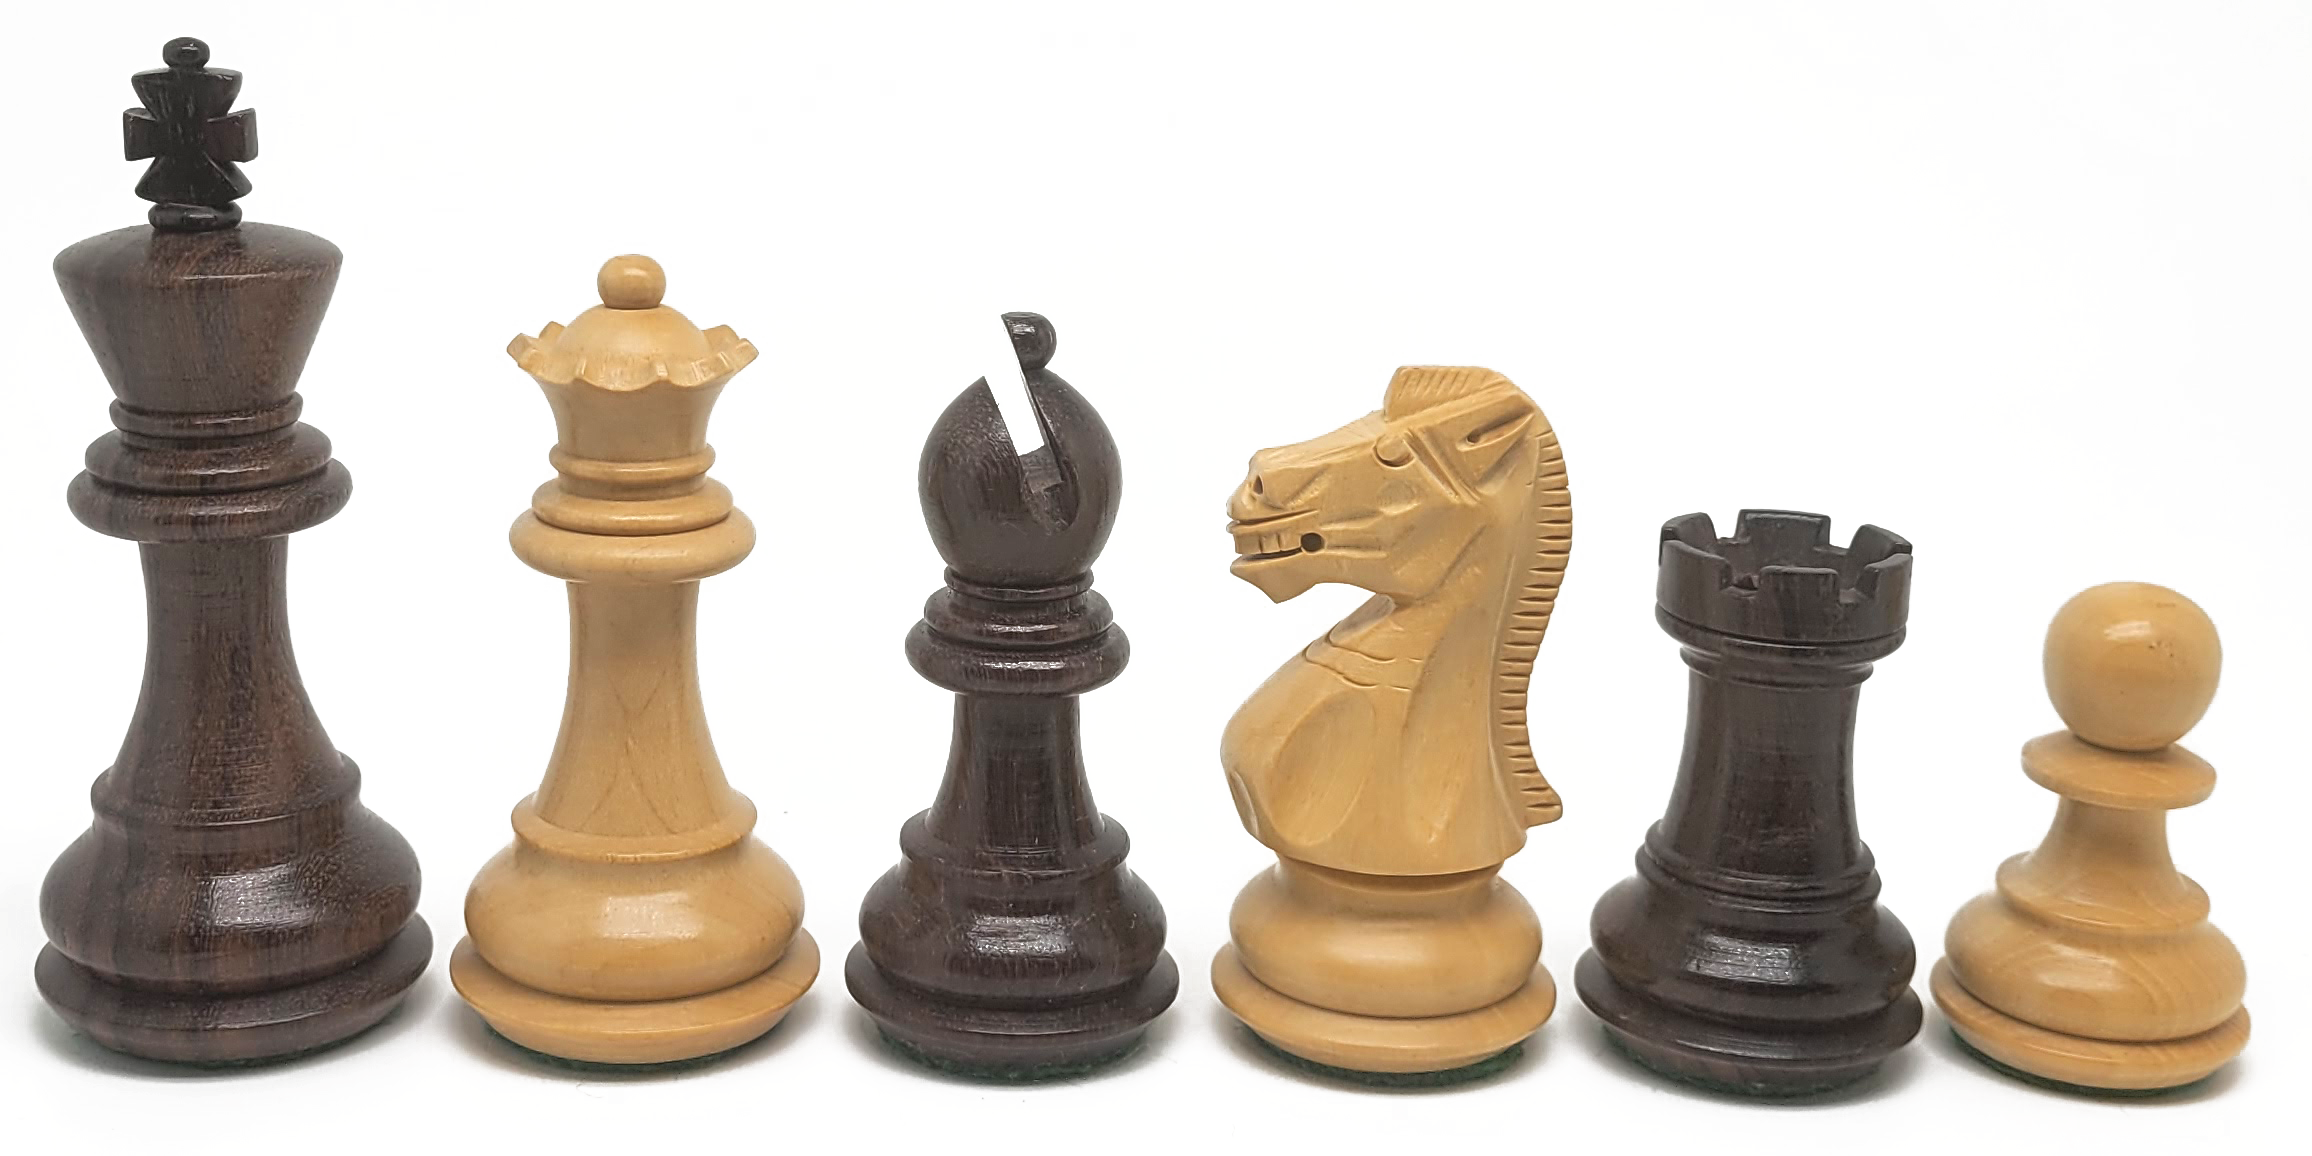 VI/ Piezas de ajedrez modelo Championship "3,50" Ebanizado.